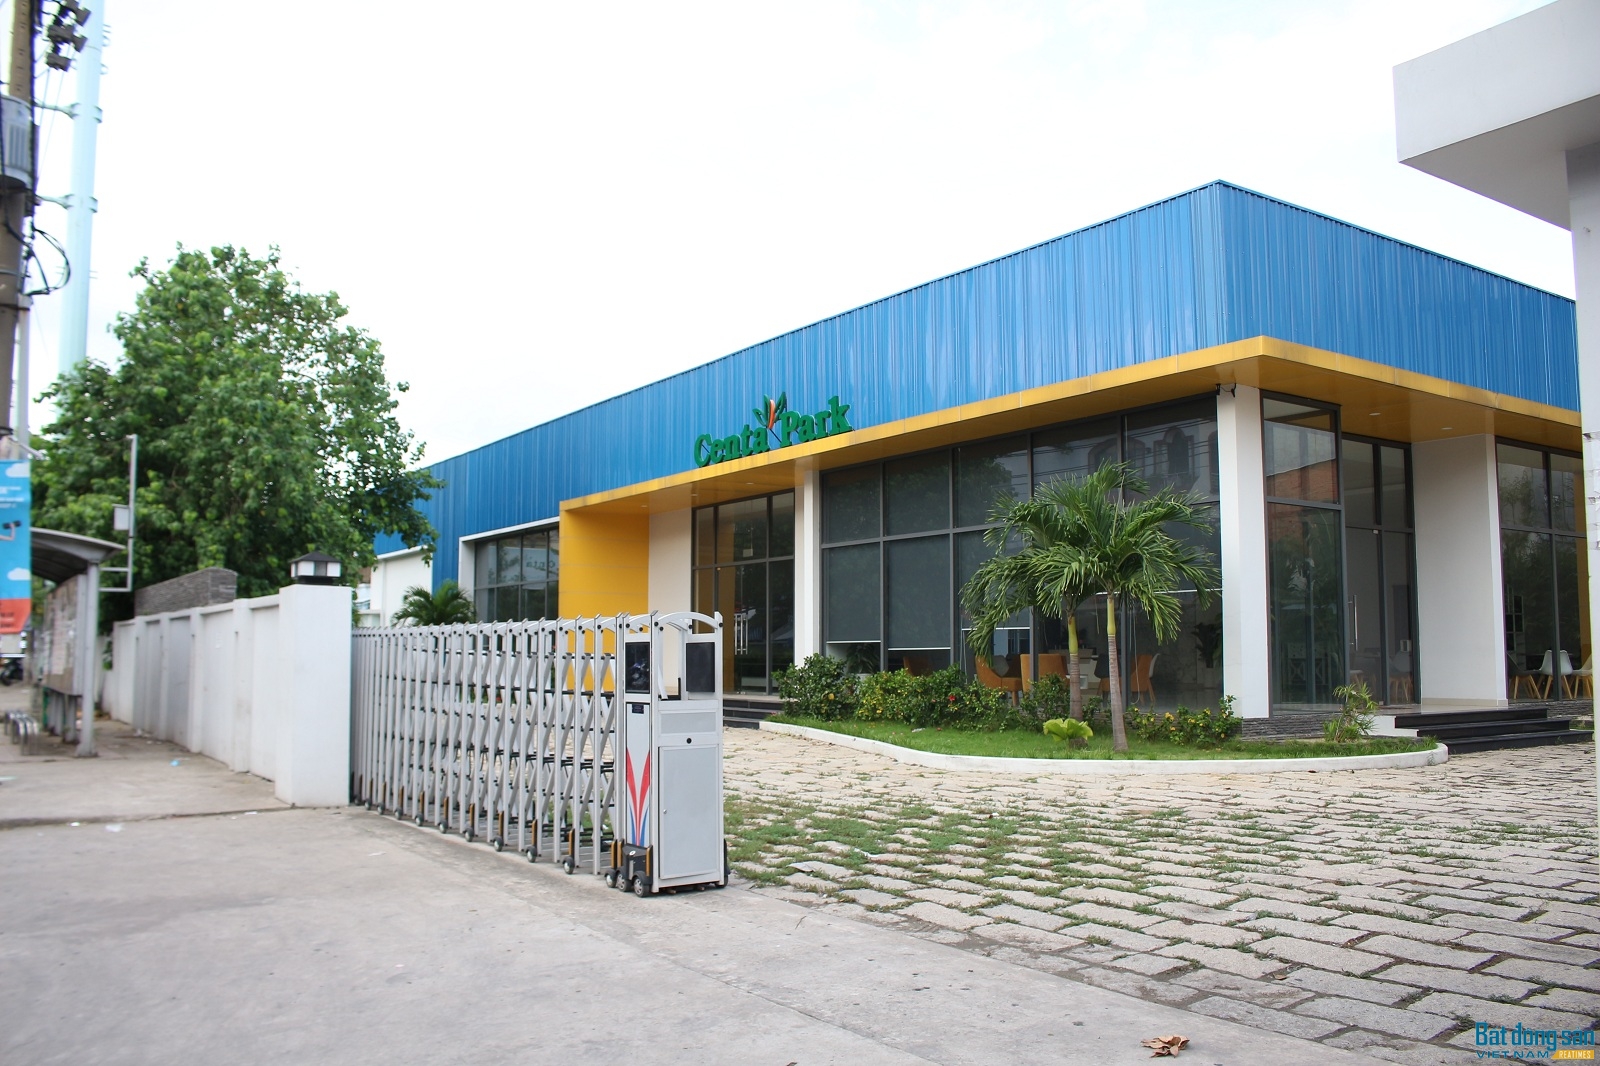 Dự án khu phức hợp 678 Âu Cơ (phường 14, quận Tân Bình, TP.HCM), tên thương mại là Centa Park